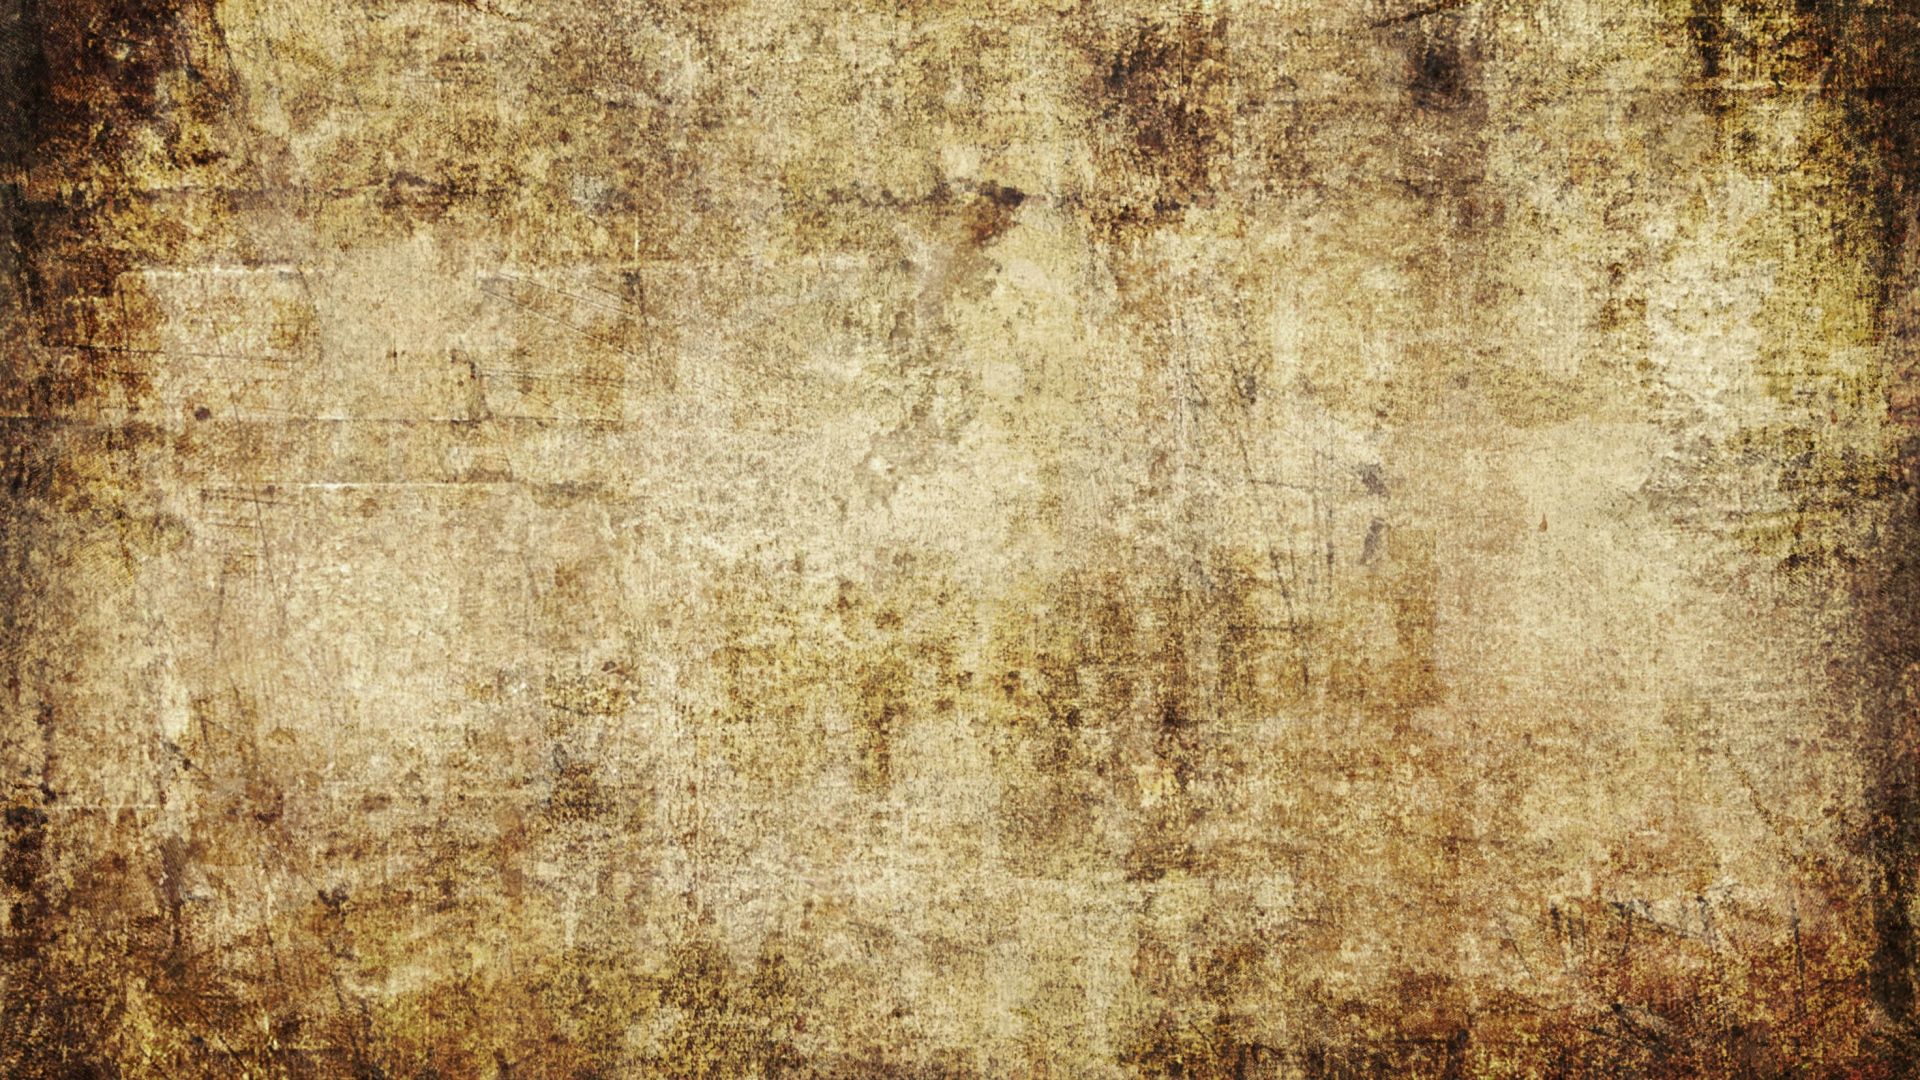 Dirt Texture Hd Wallpapers